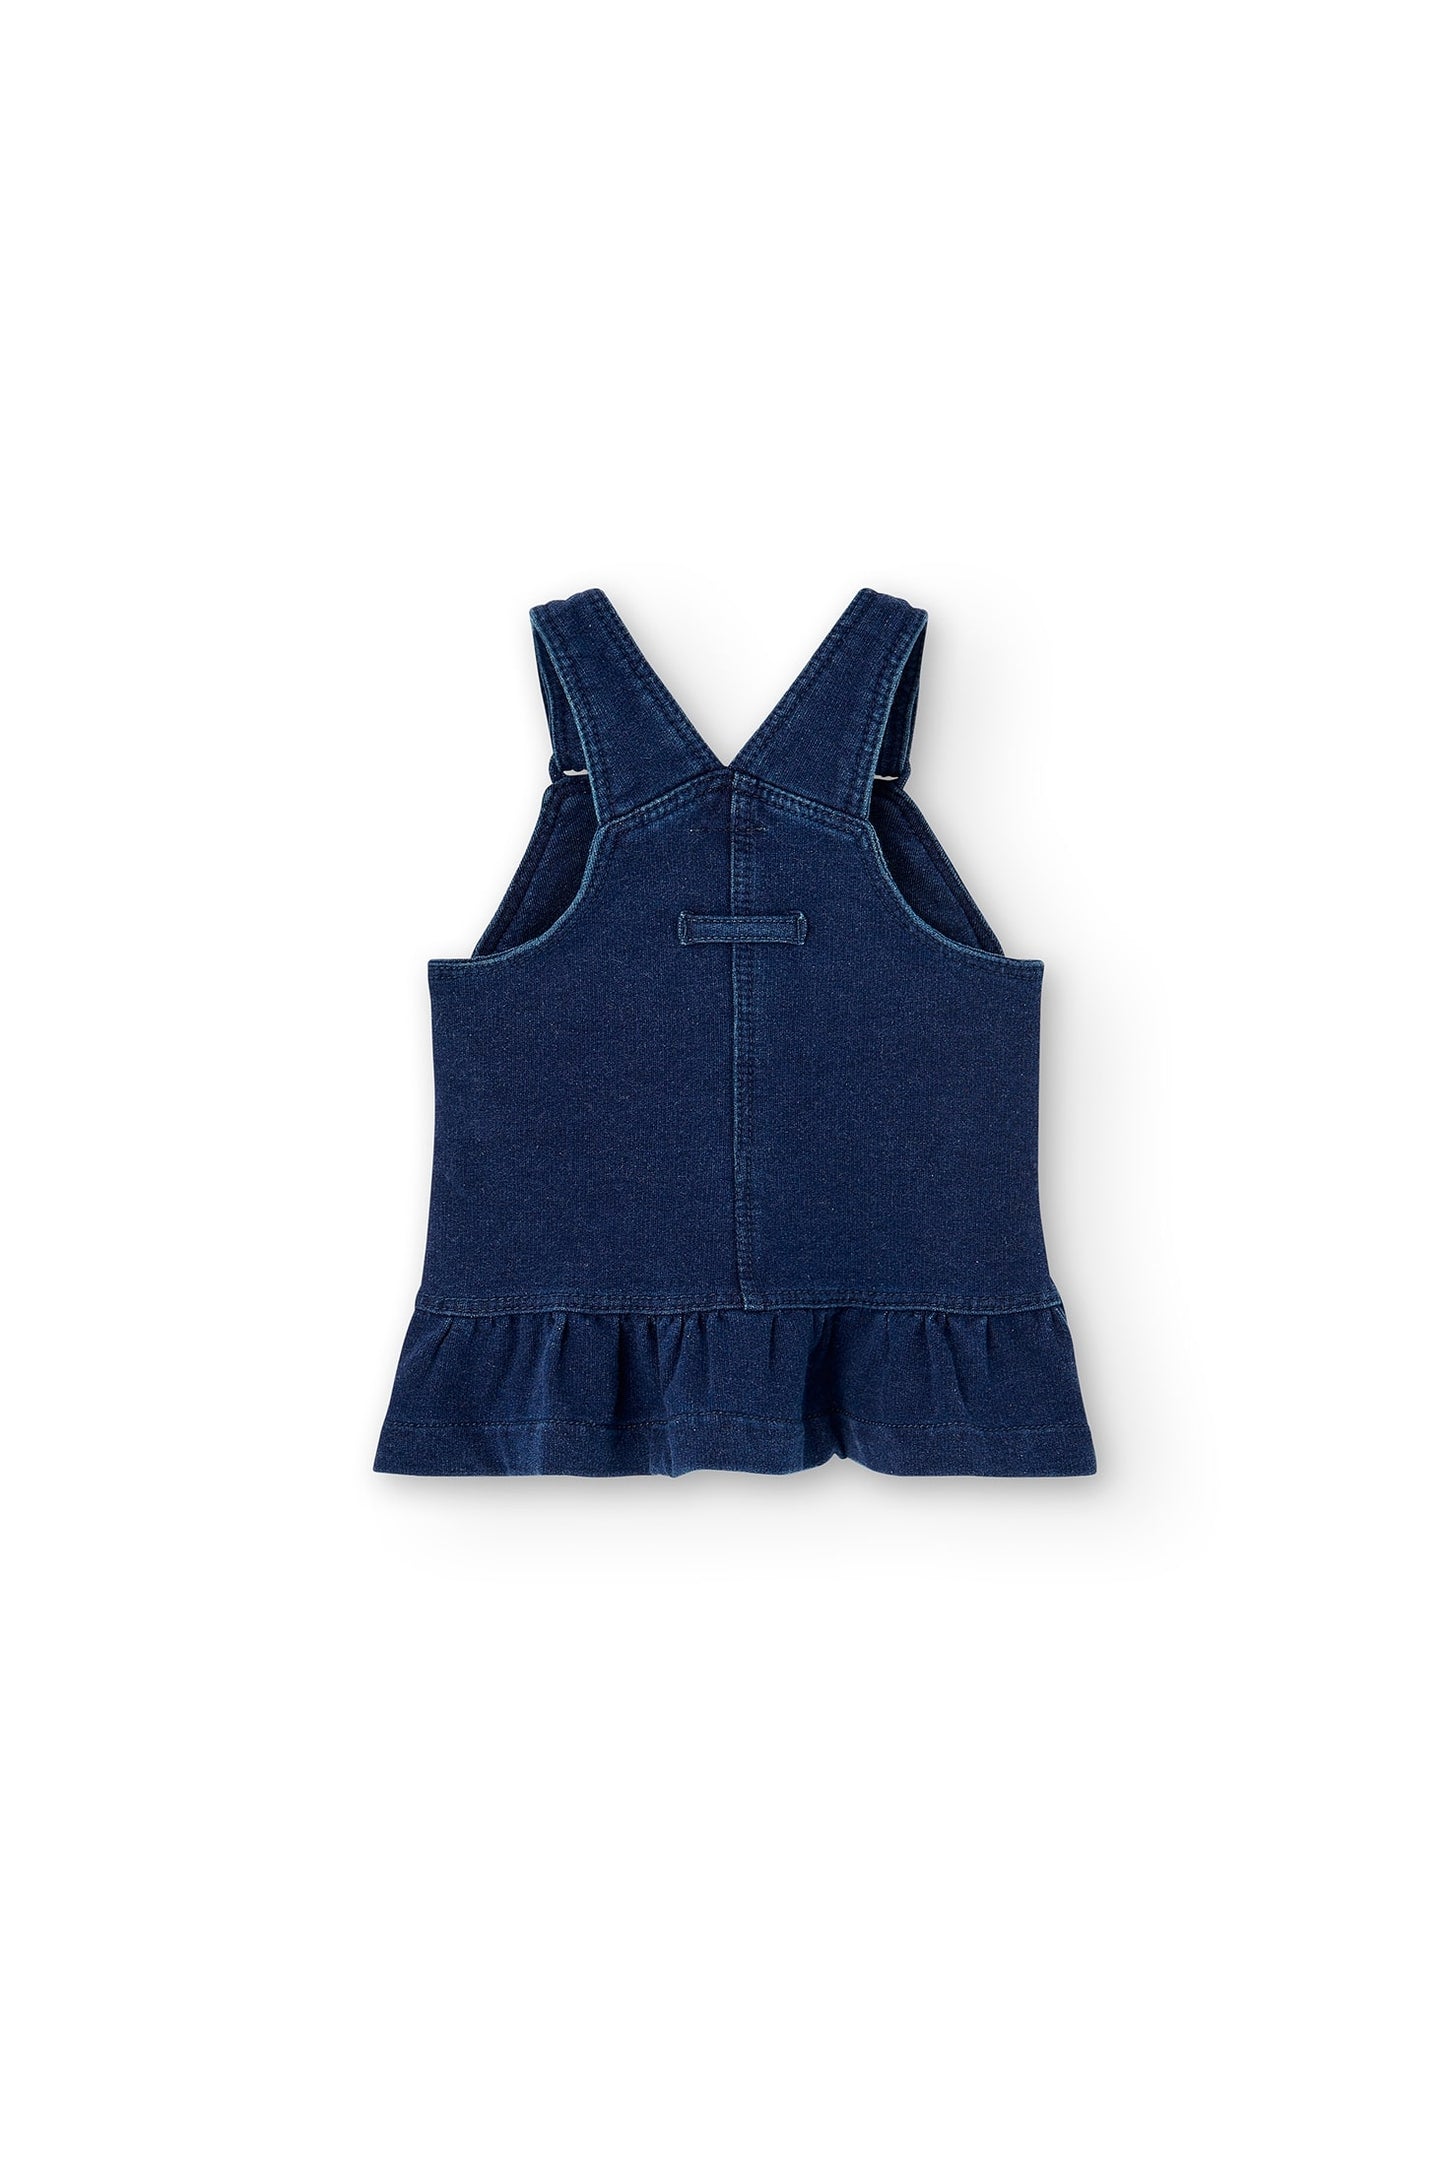 Boboli Baby Knit Shirt&Overalls Set _Navy 135032-9889